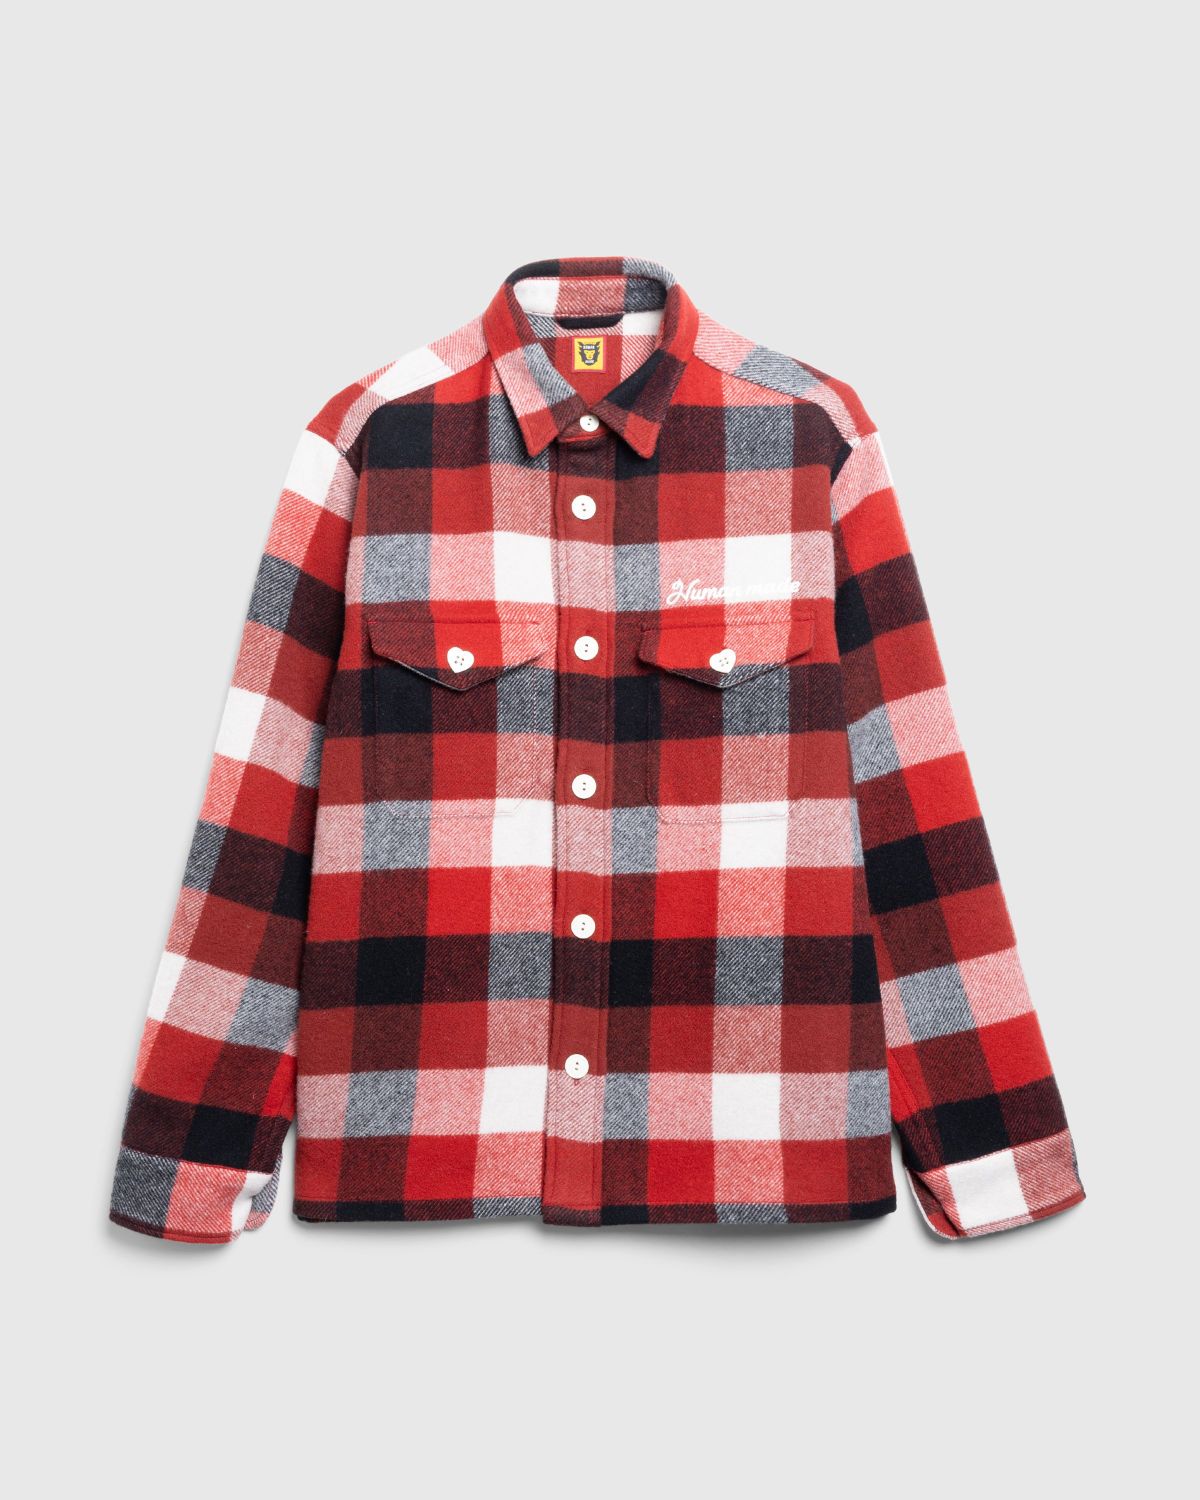 Human Made – Wool Beaver Block Check Shirt Red